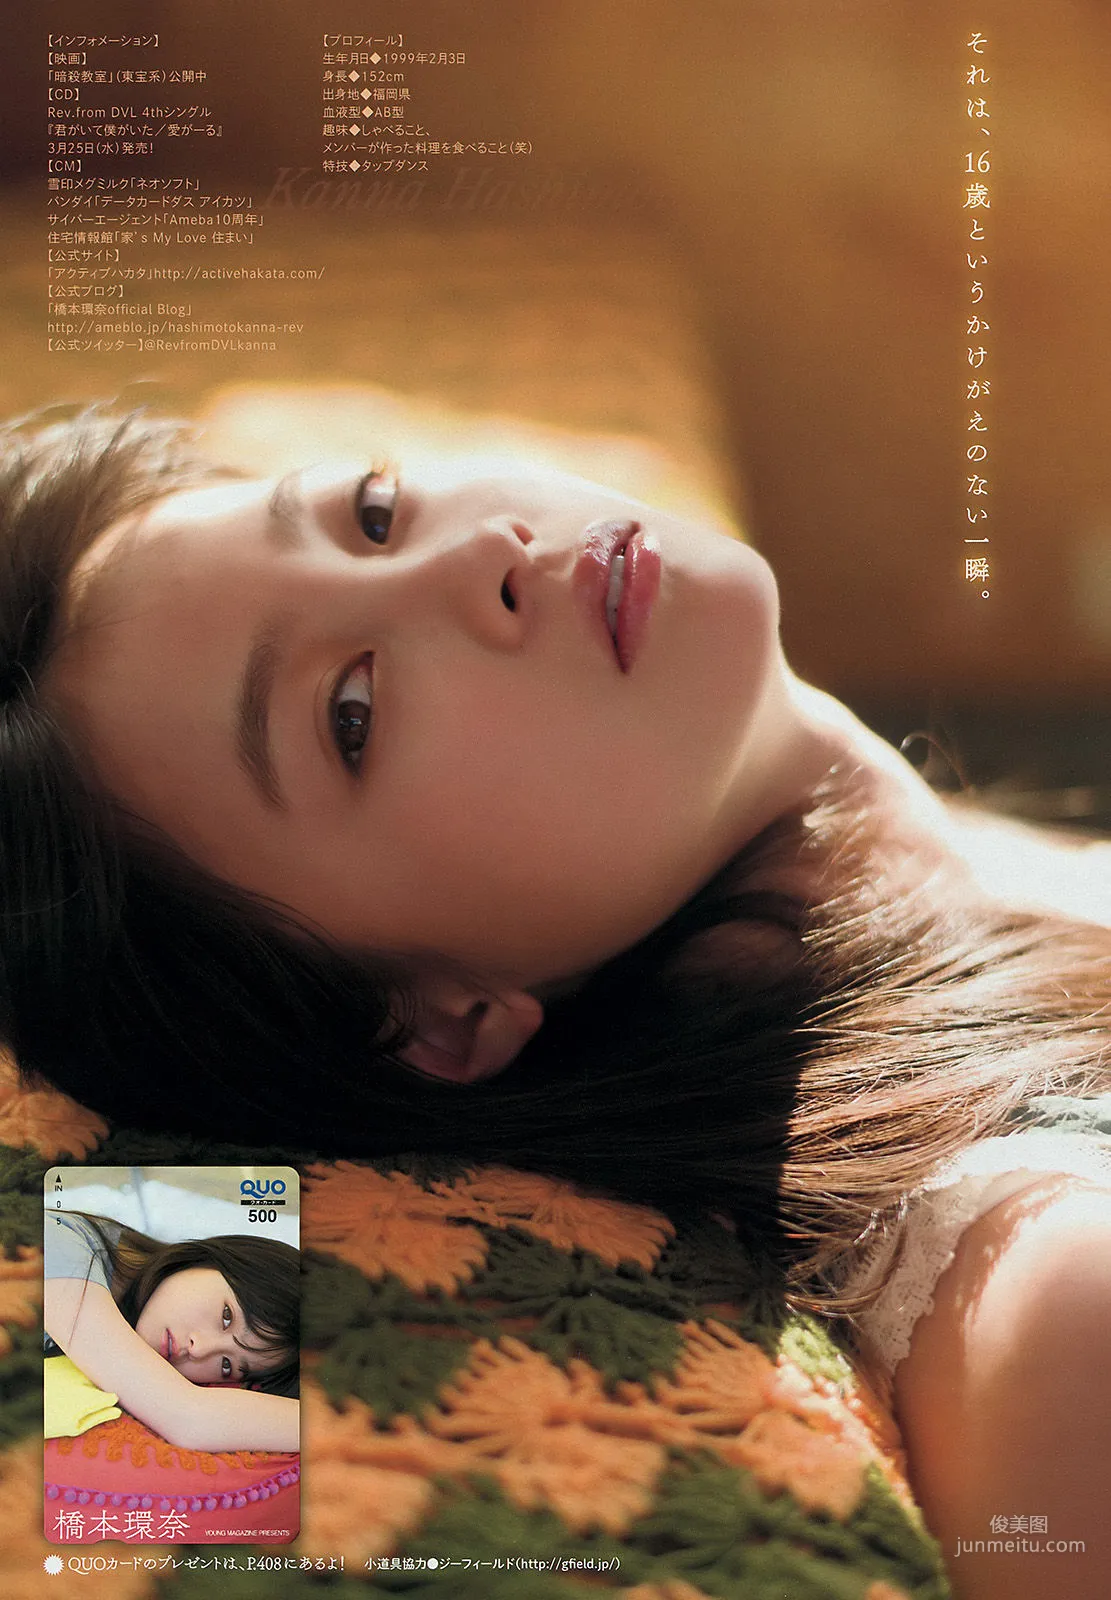 [Young Magazine] 橋本環奈 上西星来 2015年No.17 写真杂志7